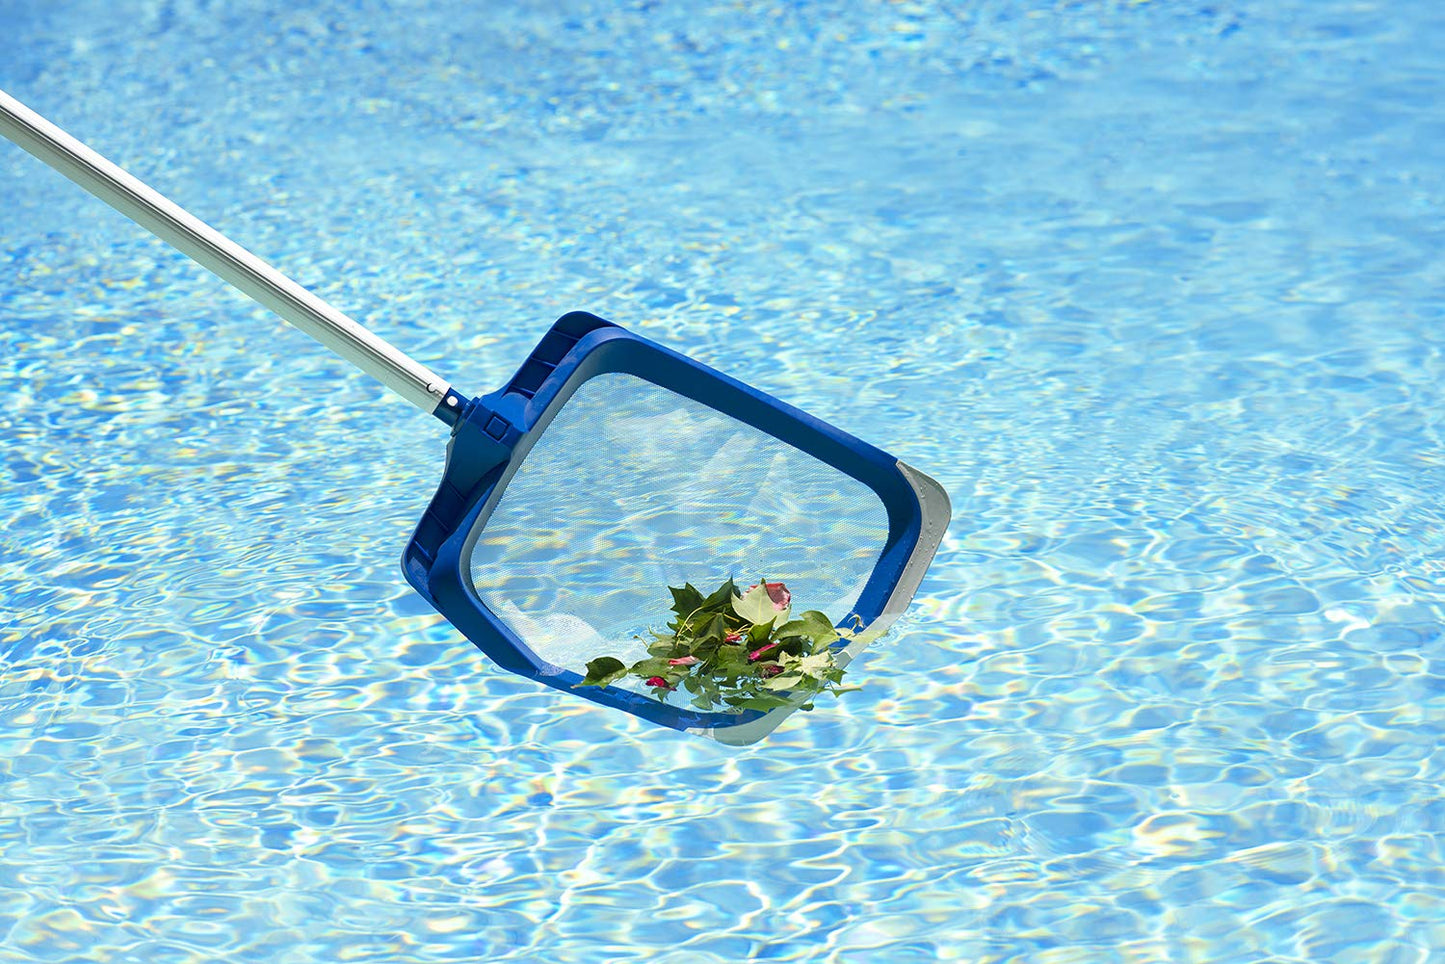 Poolmaster 21174 Écumeur de piscine en vinyle robuste de luxe avec pare-chocs en caoutchouc Blanc